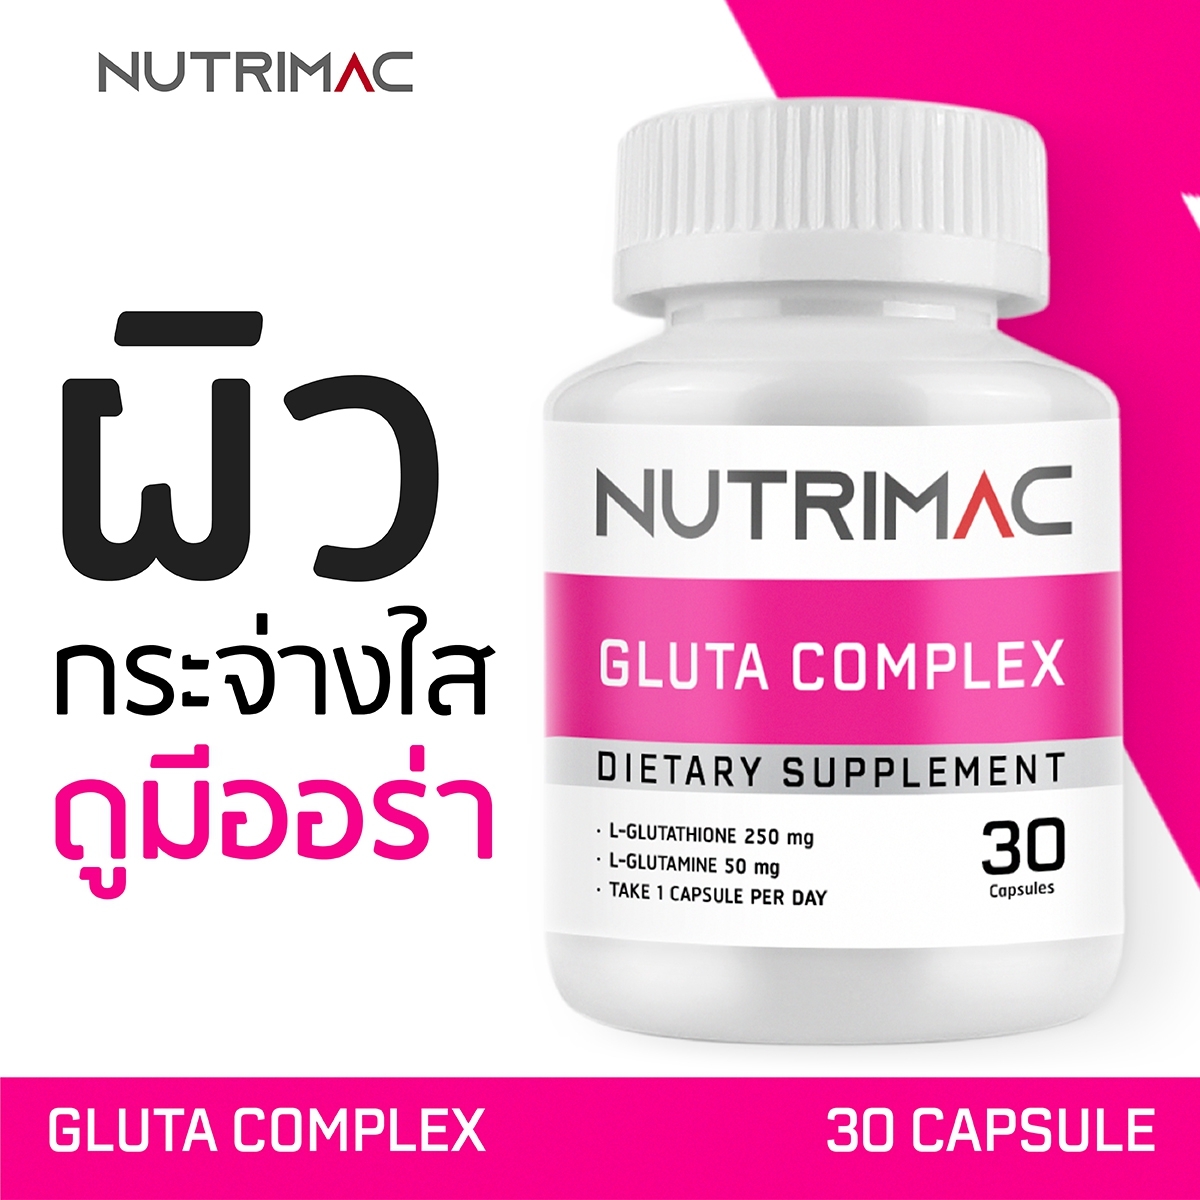 NUTRIMAC GLUTA COMPLEX DIETARY SUPPLEMENT 30 CAPSULES